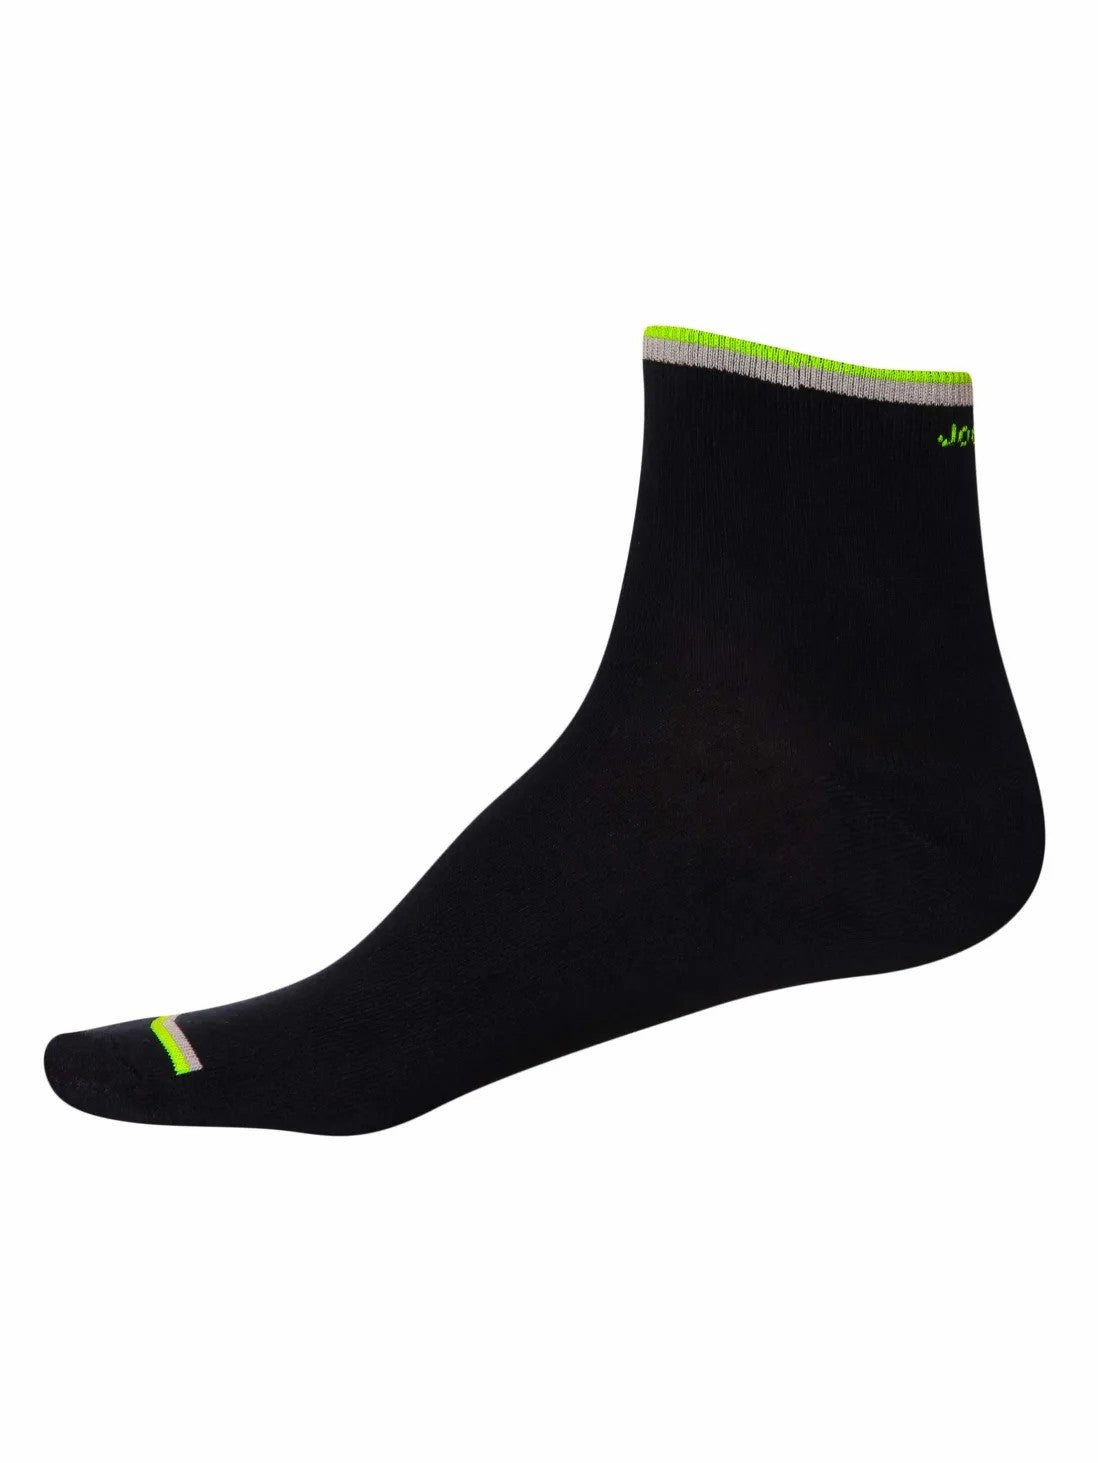 Men's Assorted Ankle Socks